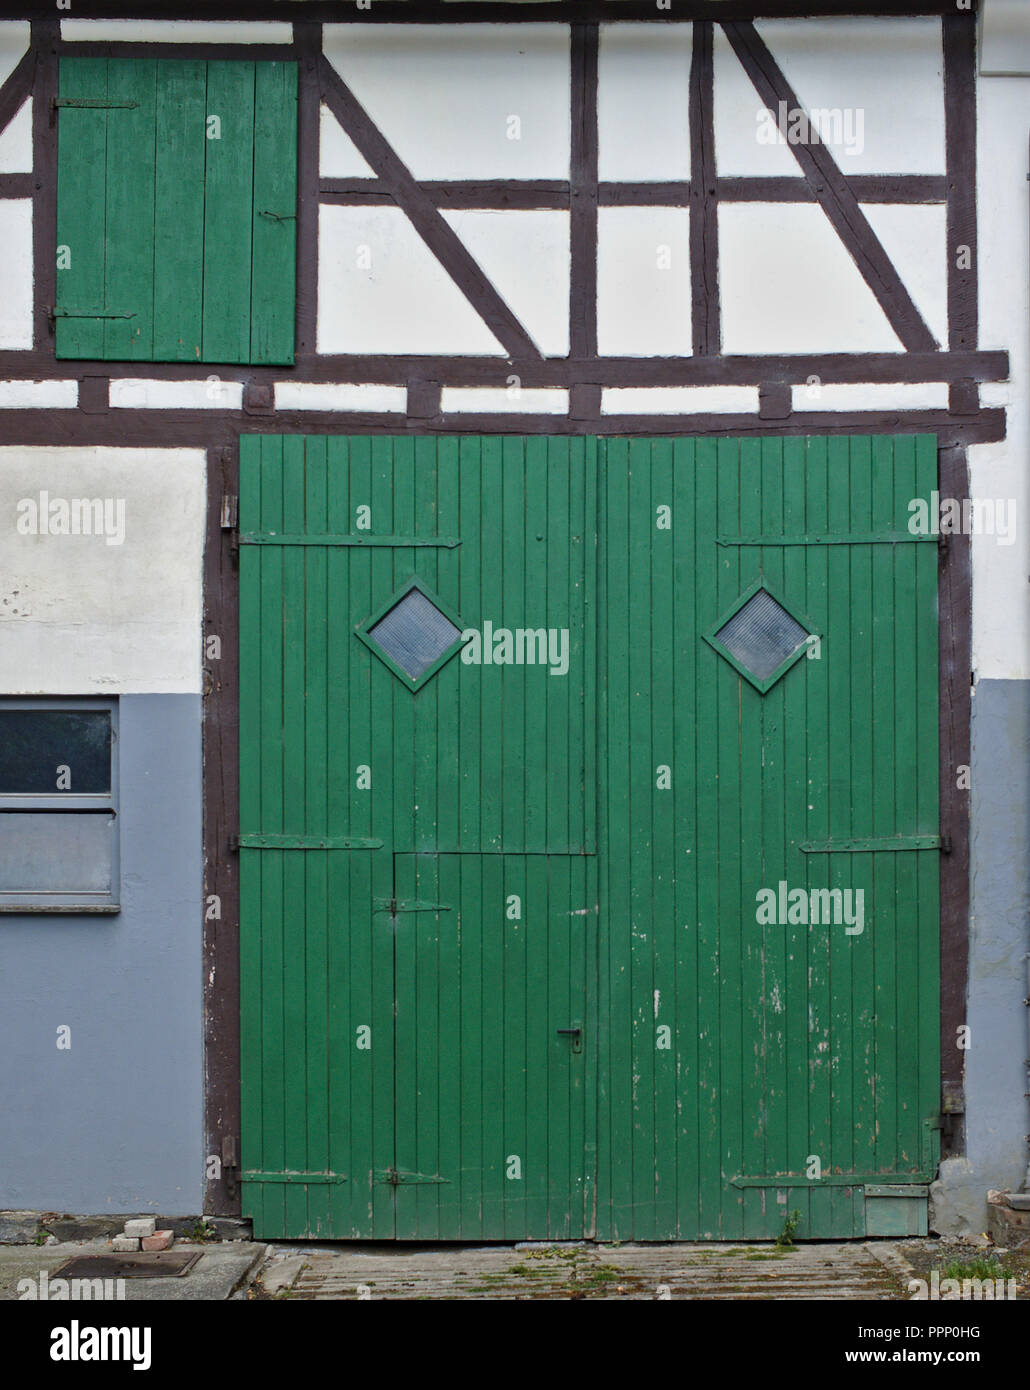 White a struttura mista in legno e muratura con parete verde grande fienile in legno porta e più piccolo di legno verde Porta in secondo piano Foto Stock